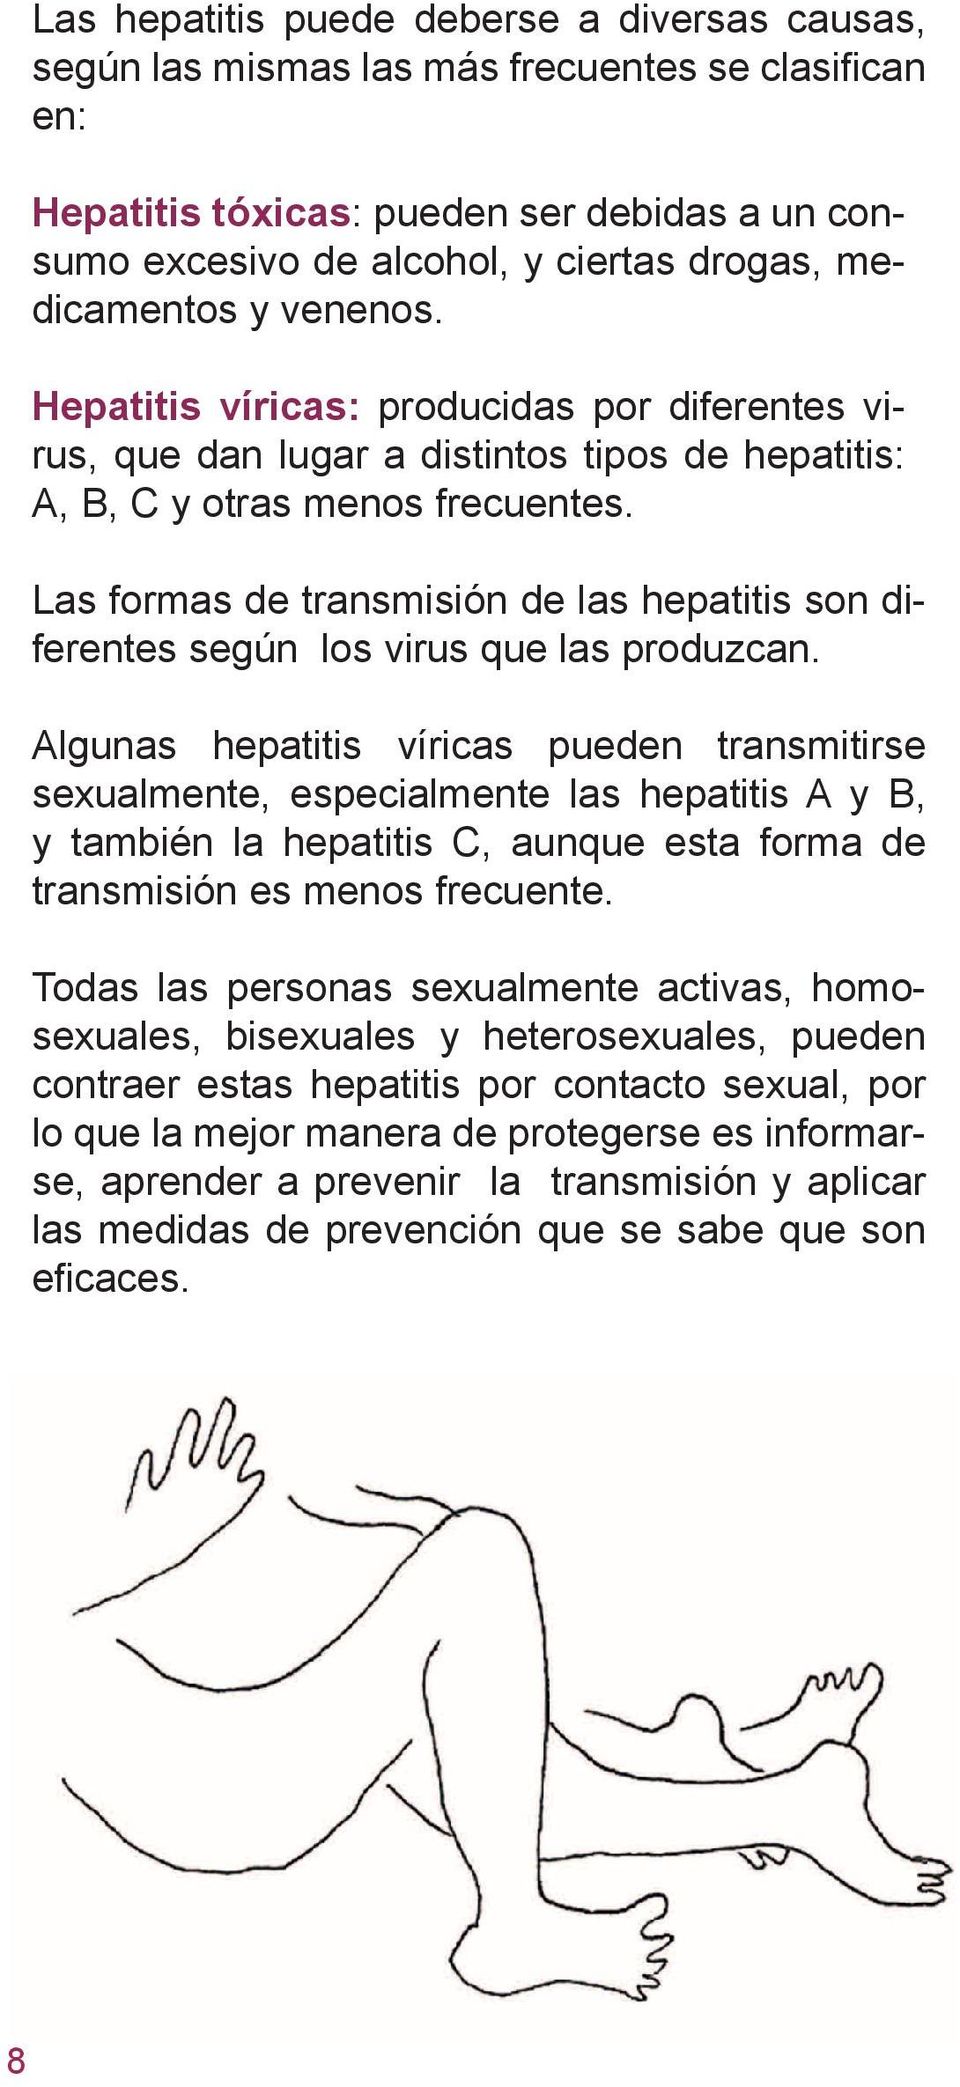 Las formas de transmisión de las hepatitis son diferentes según los virus que las produzcan.